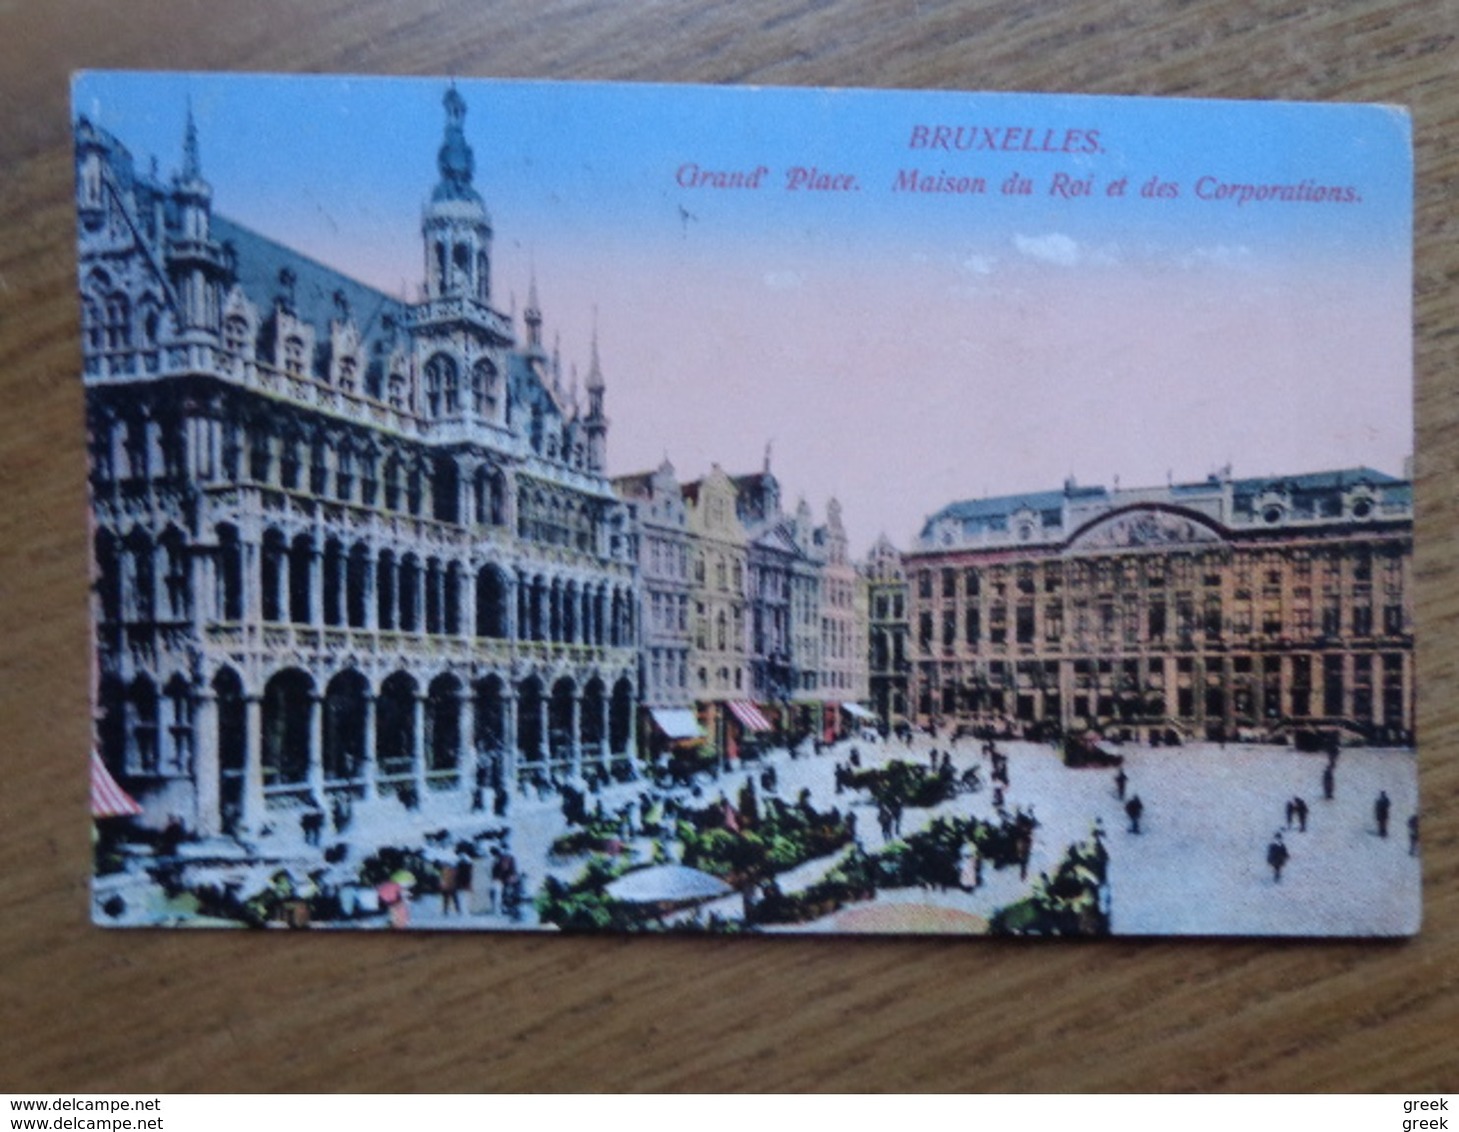 68 oude kaarten van België - Belgique (001) ook FELDPOST